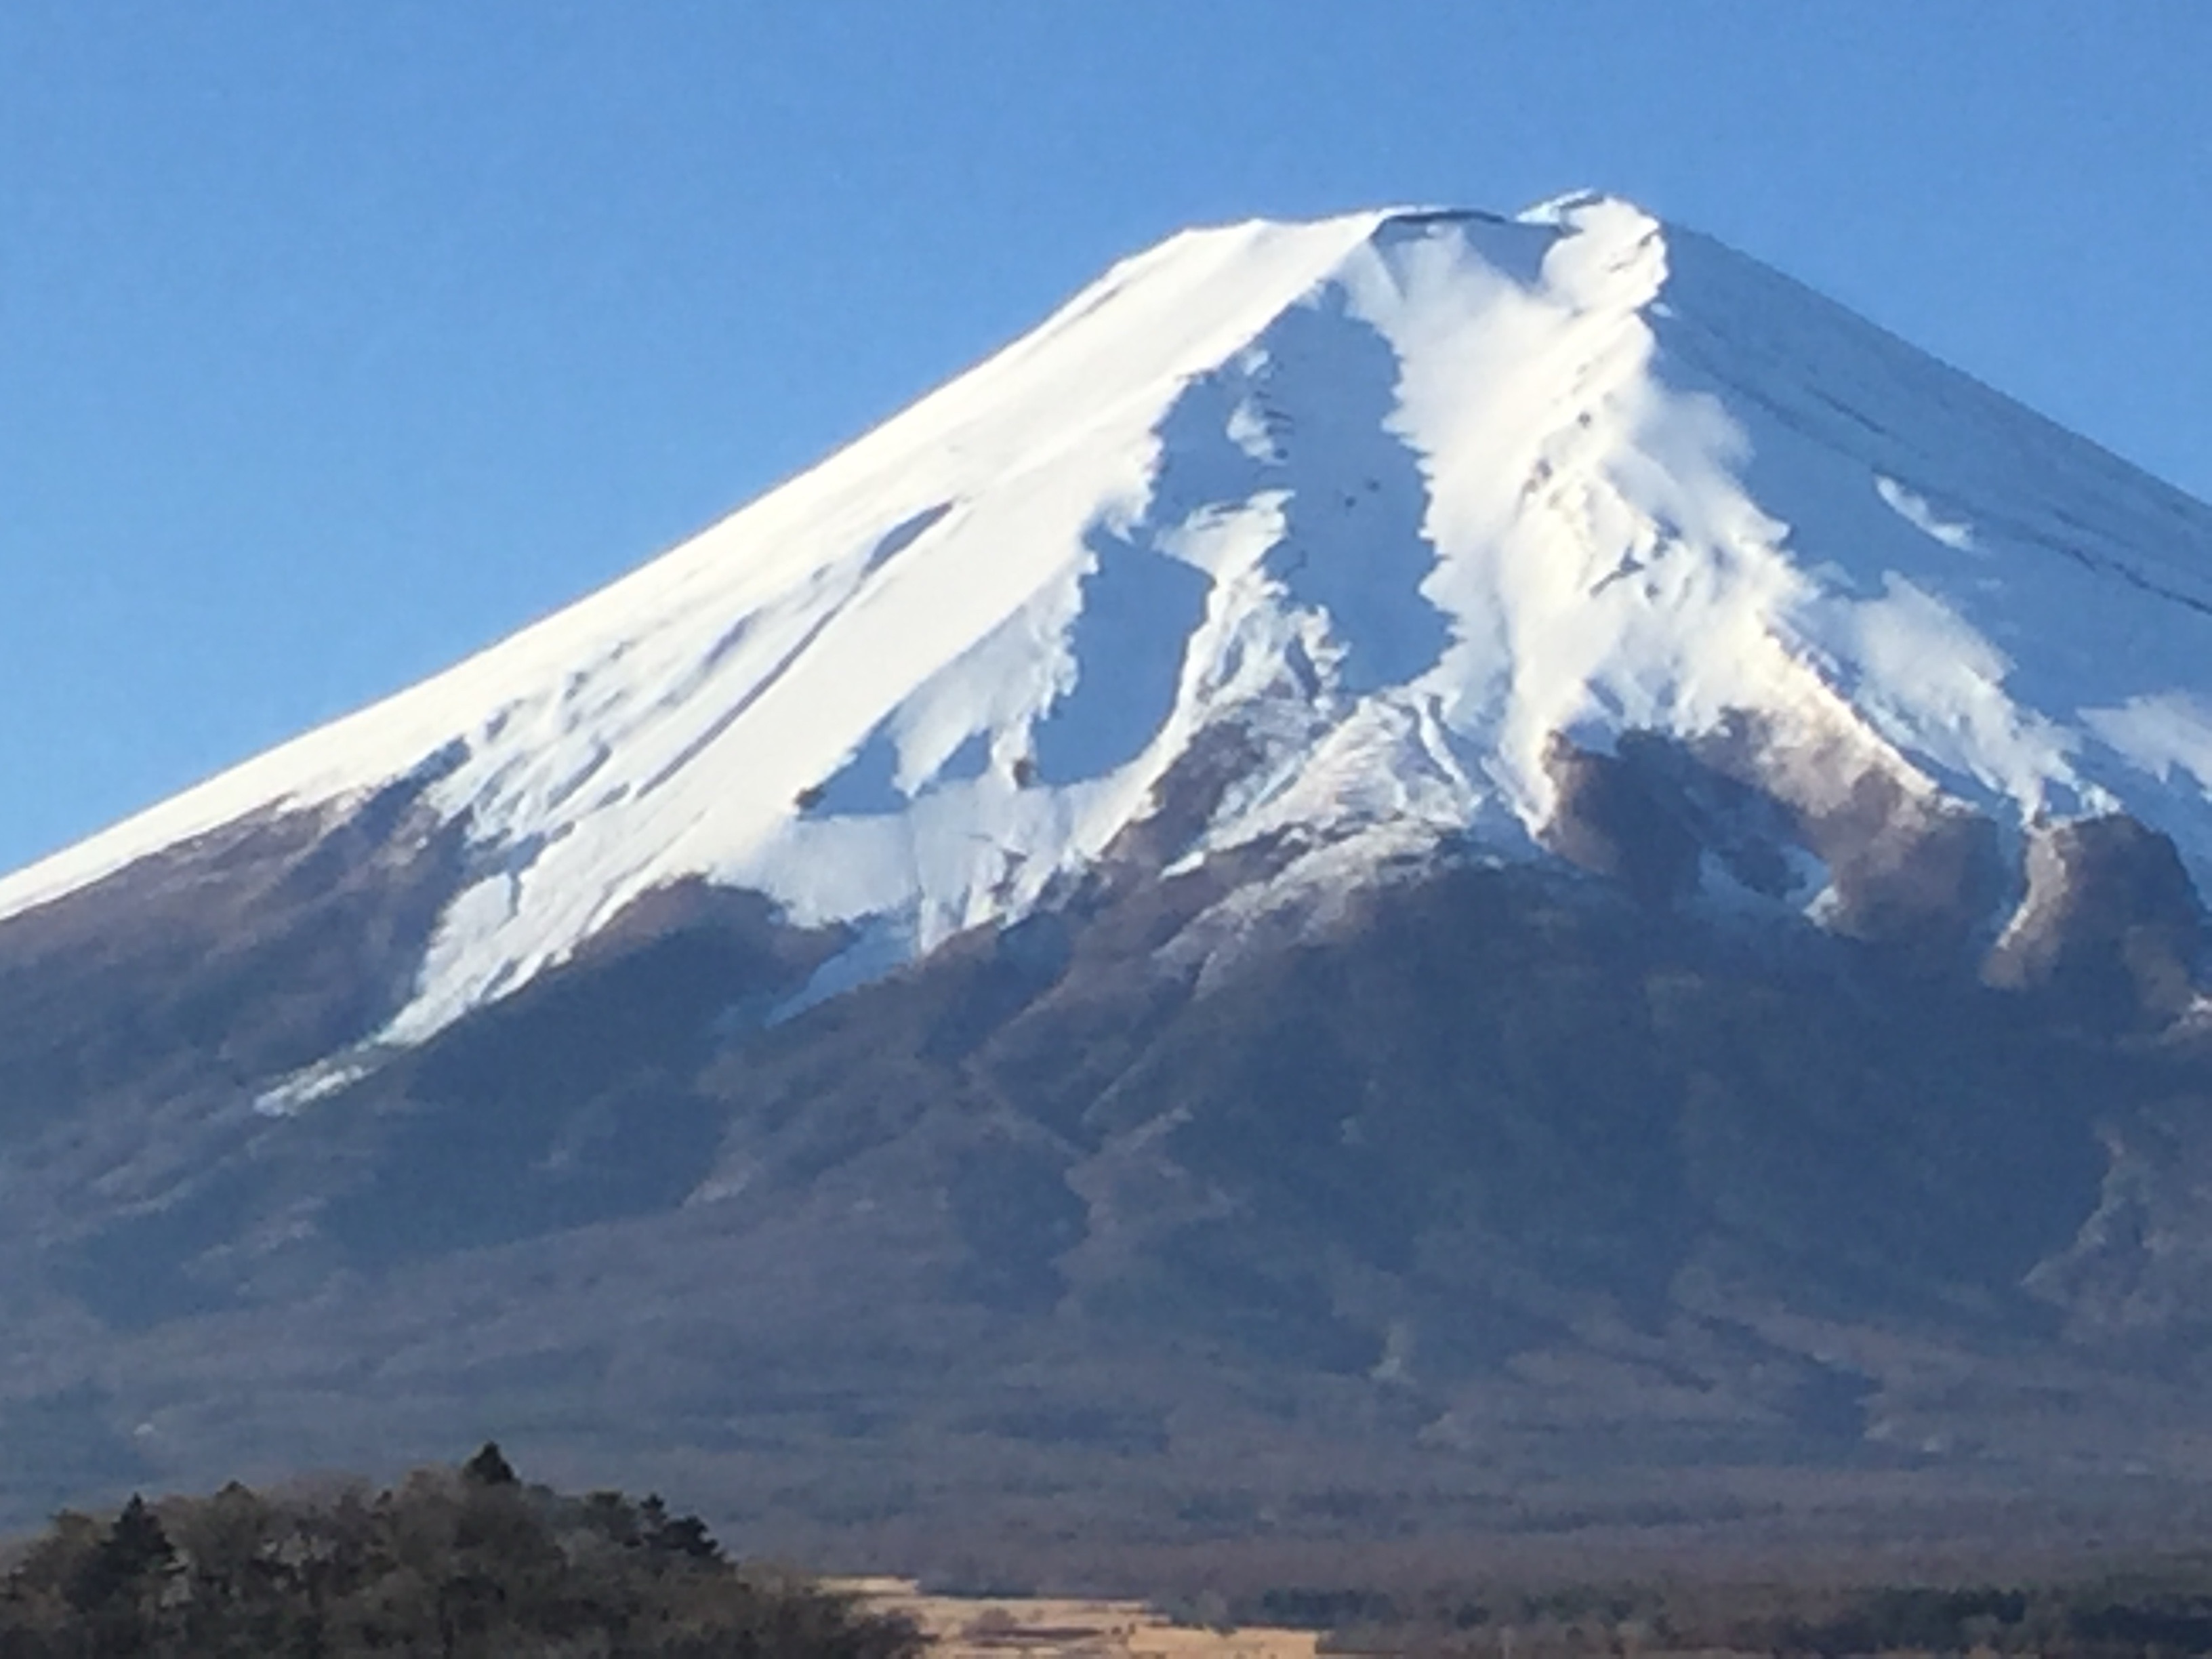 霊峰富士山の姿を眺めながら、夜明けを迎えました。